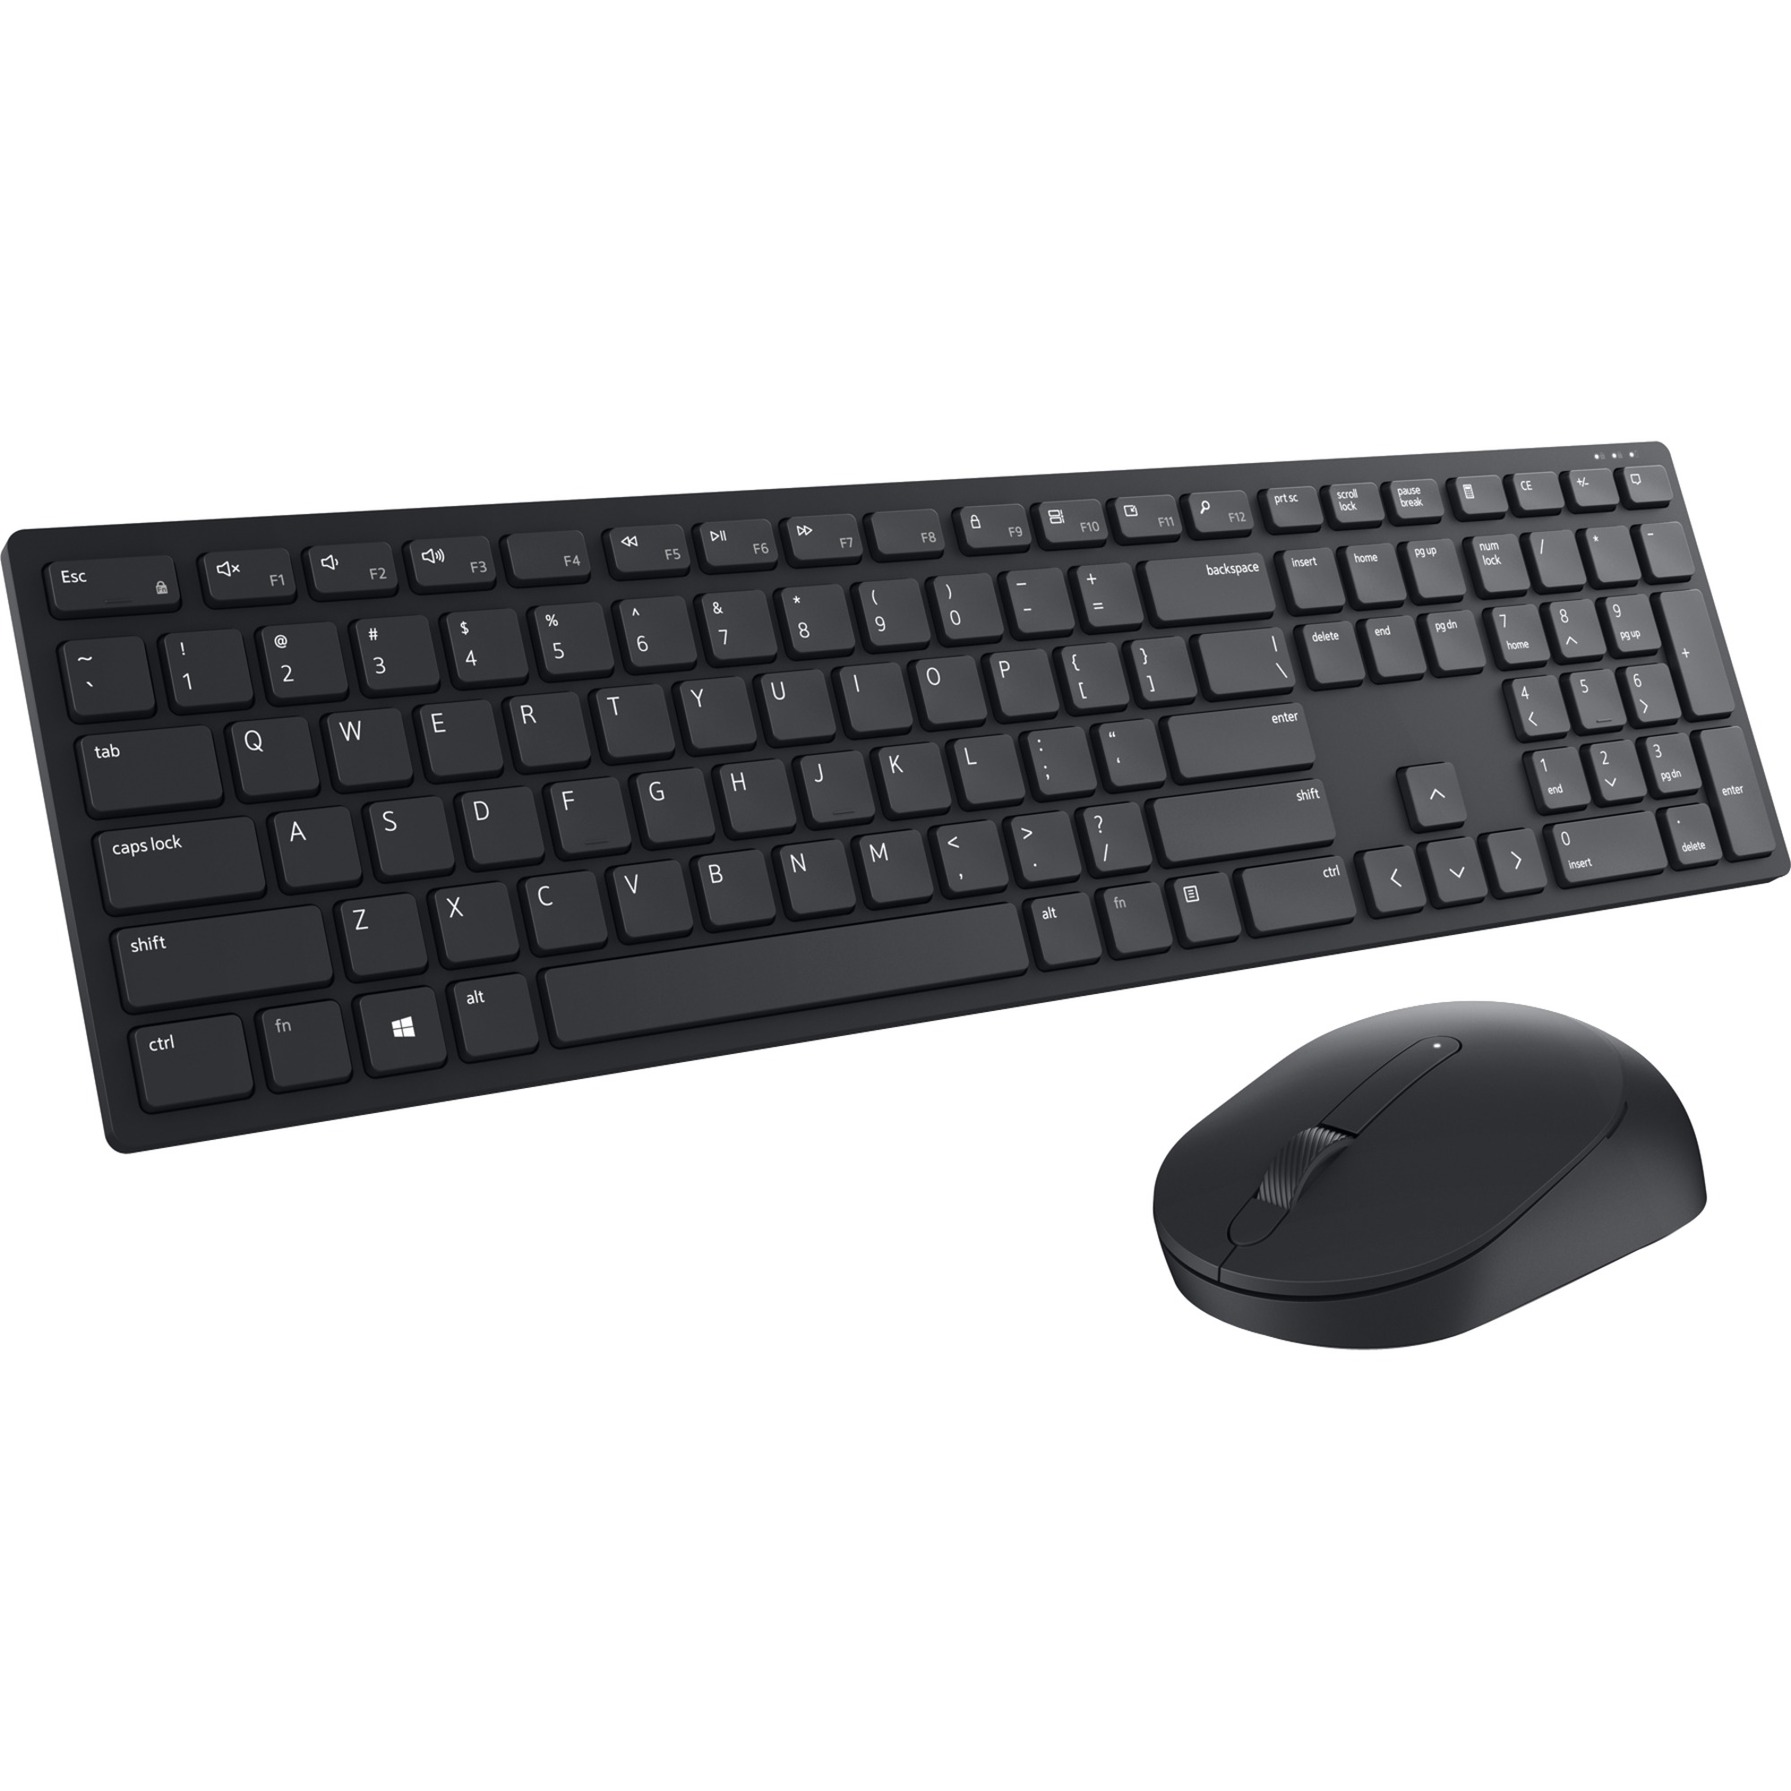 Pro-Wireless-Tastatur und -Maus (KM5221W), Desktop-Set von Dell